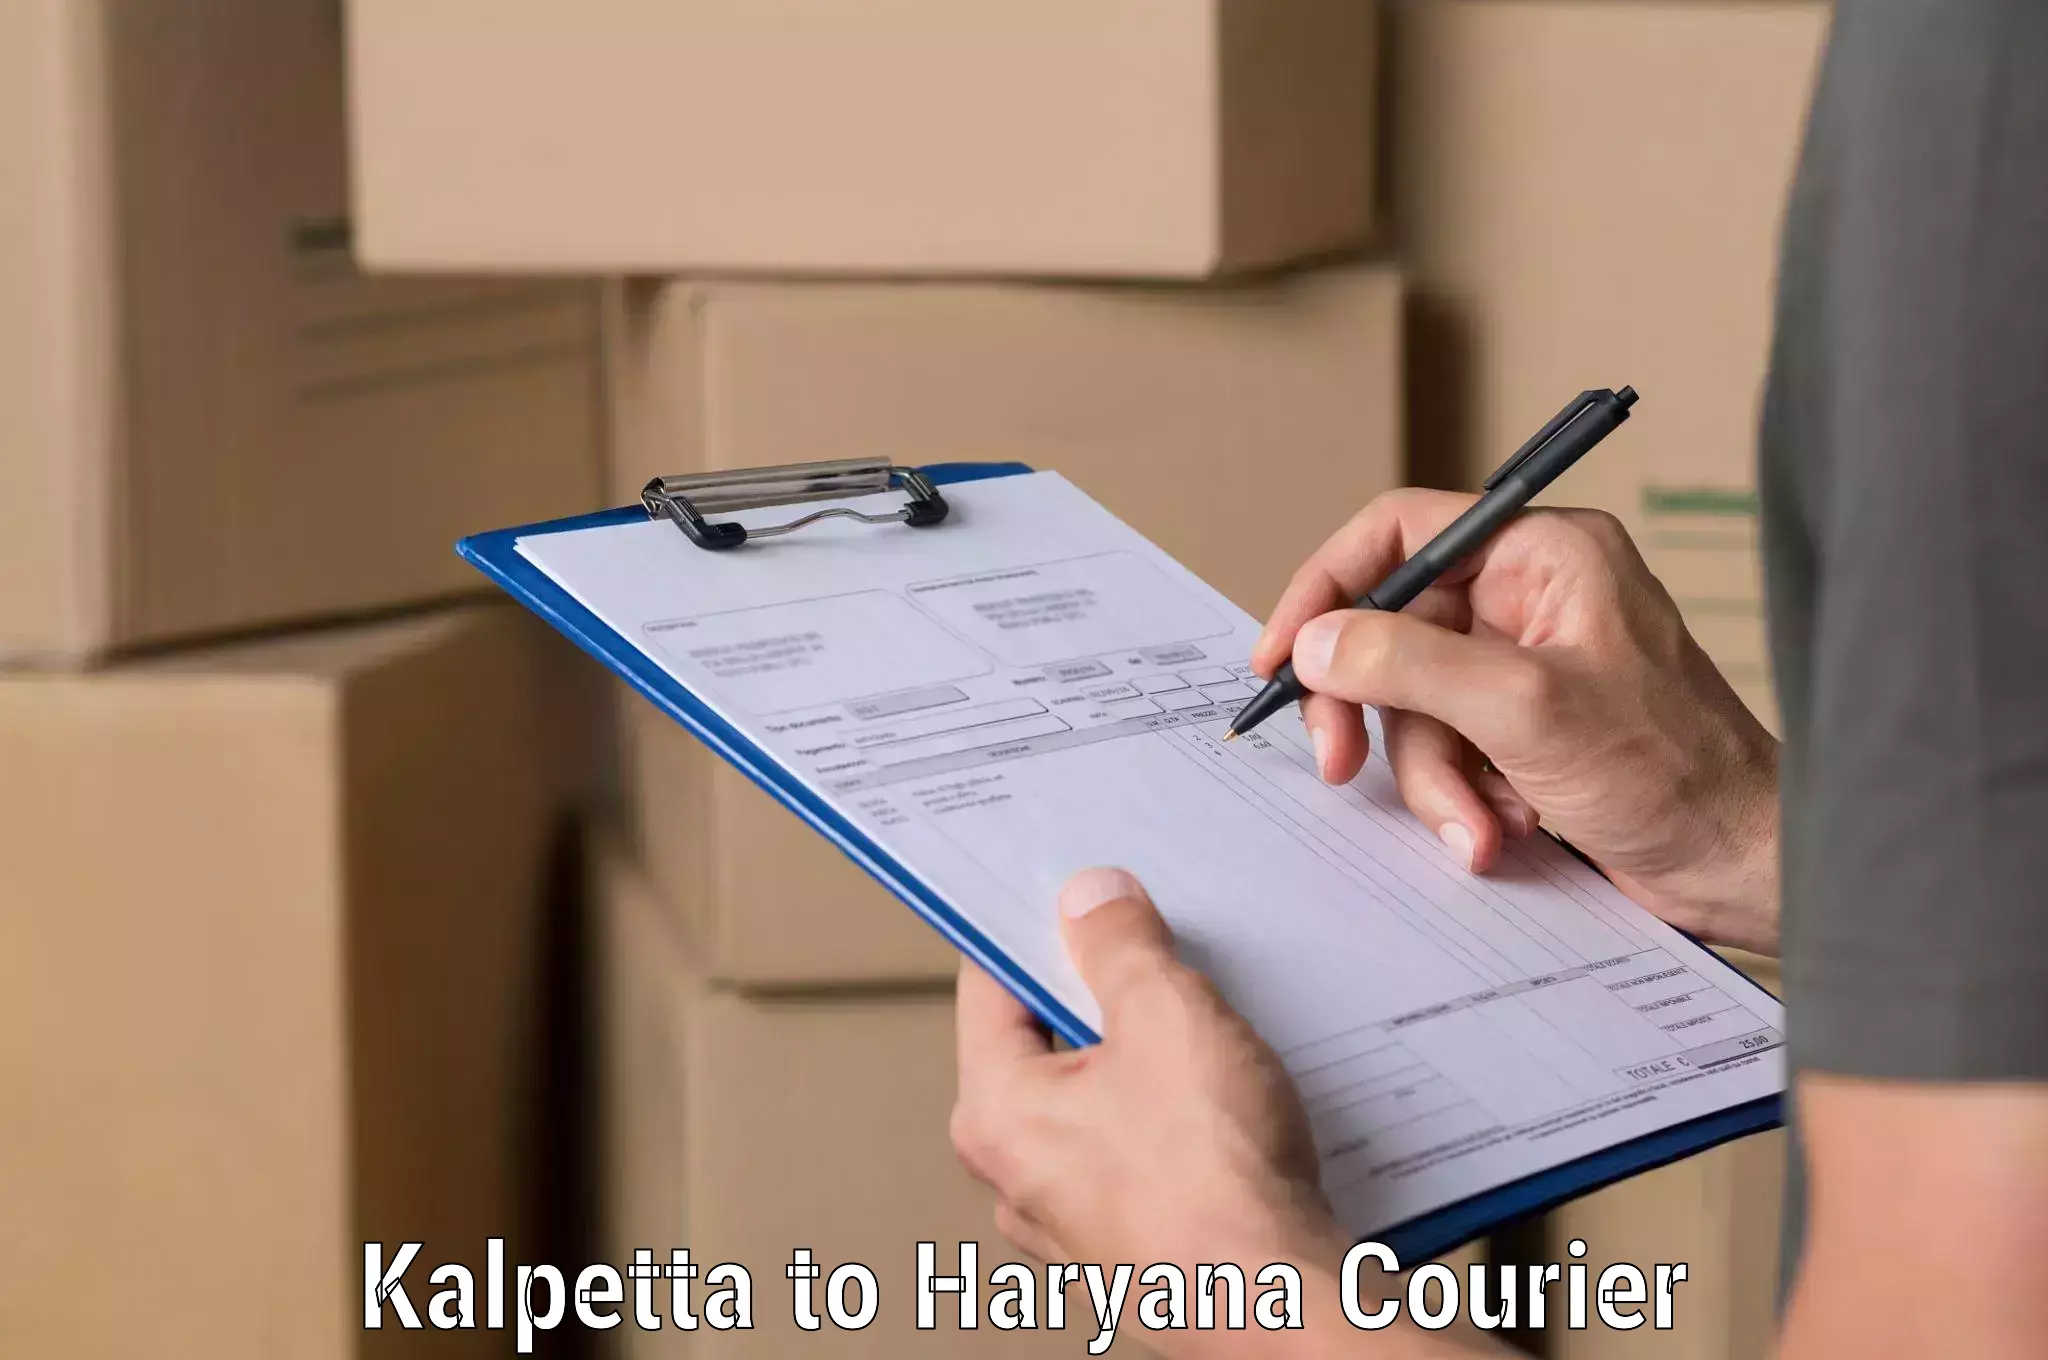 Courier service innovation Kalpetta to Rewari